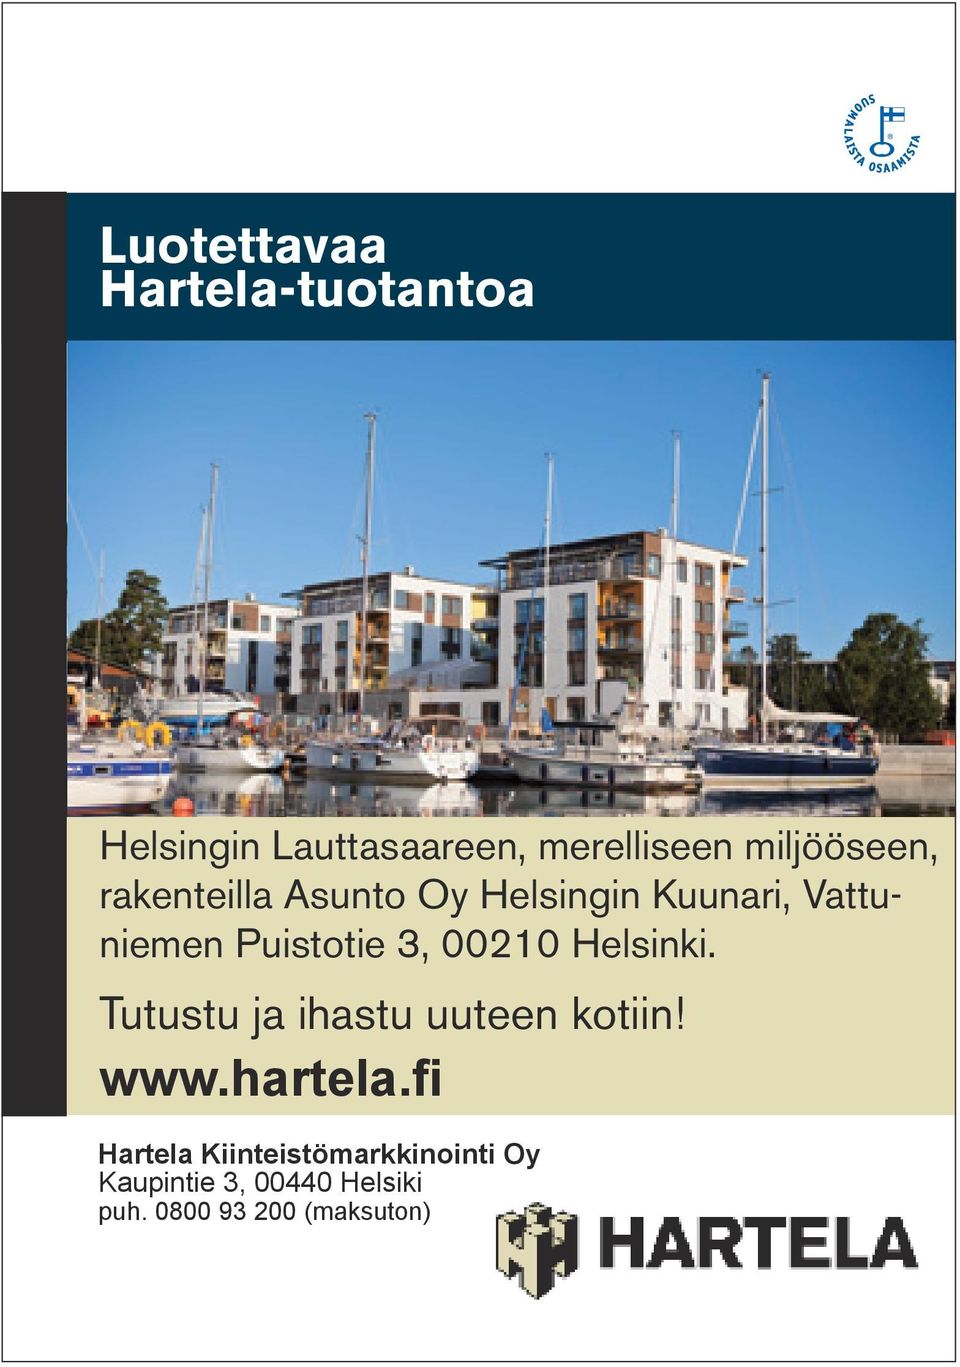 Kuunari, Vattuniemen Puistotie 3, 00210 Helsinki. Tutustu ja ihastu uuteen kotiin! www.hartela.